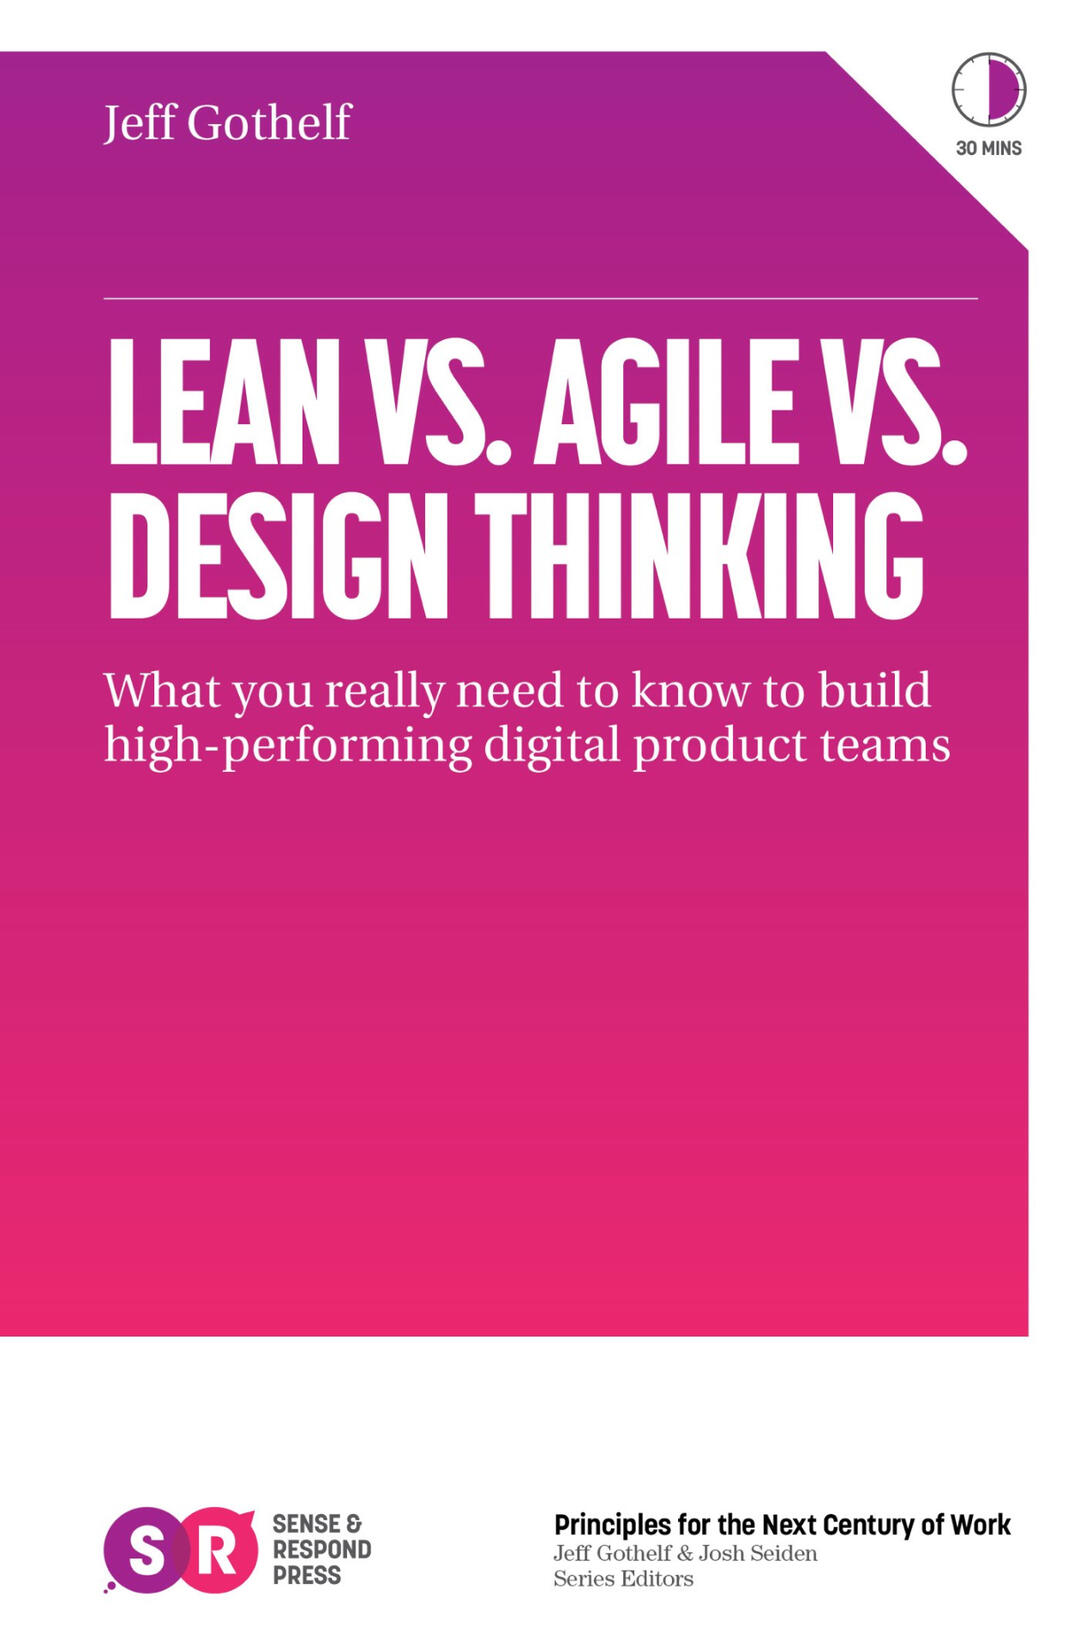 Lean Vs. Agile Vs. Design Thinking book cover image